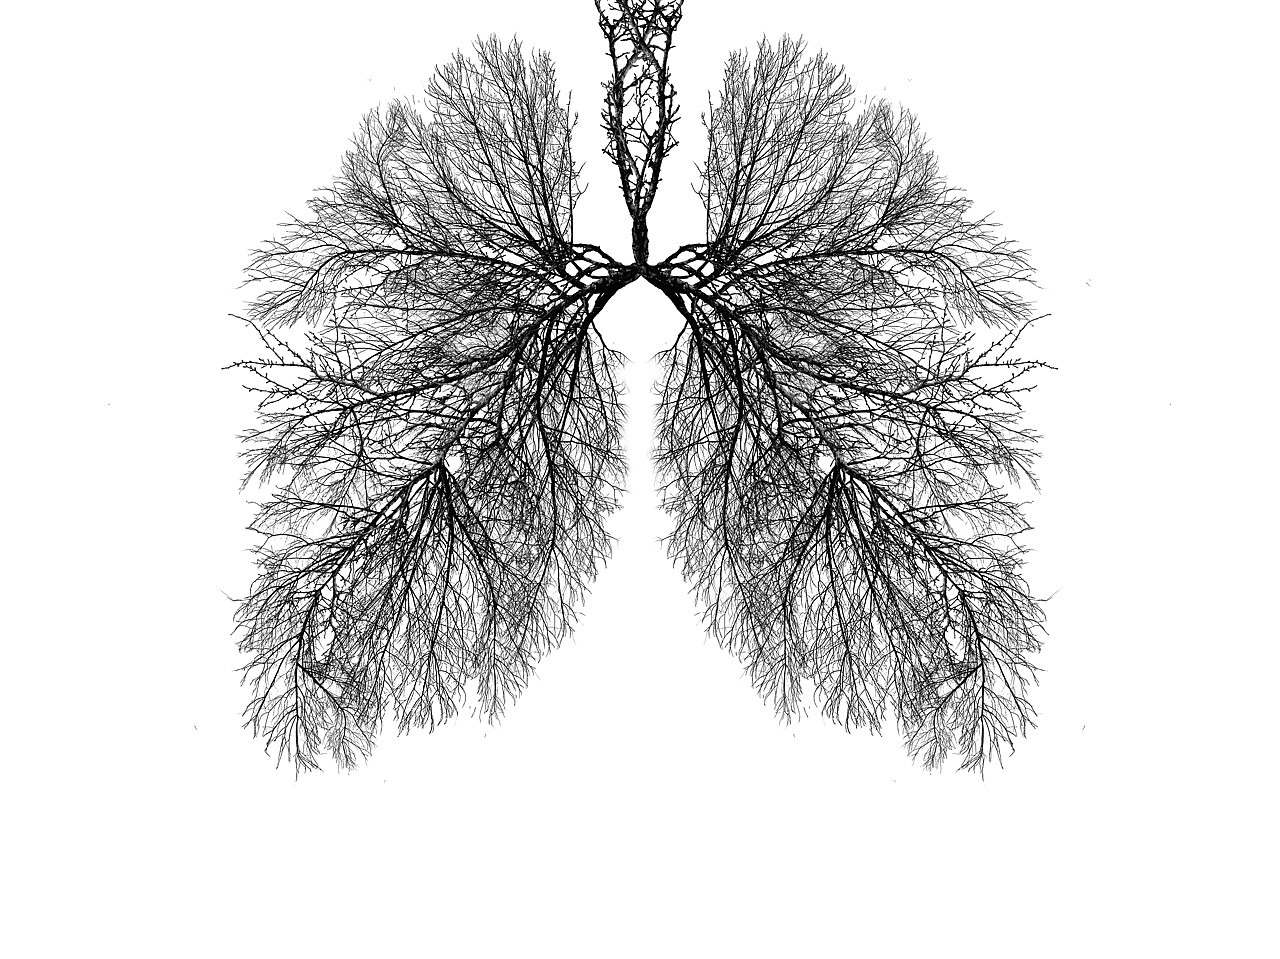 Es handelt sich um eine schwarz-weiße Illustration, die einen Baum bzw. Äste in Form einer Lunge zeigt.